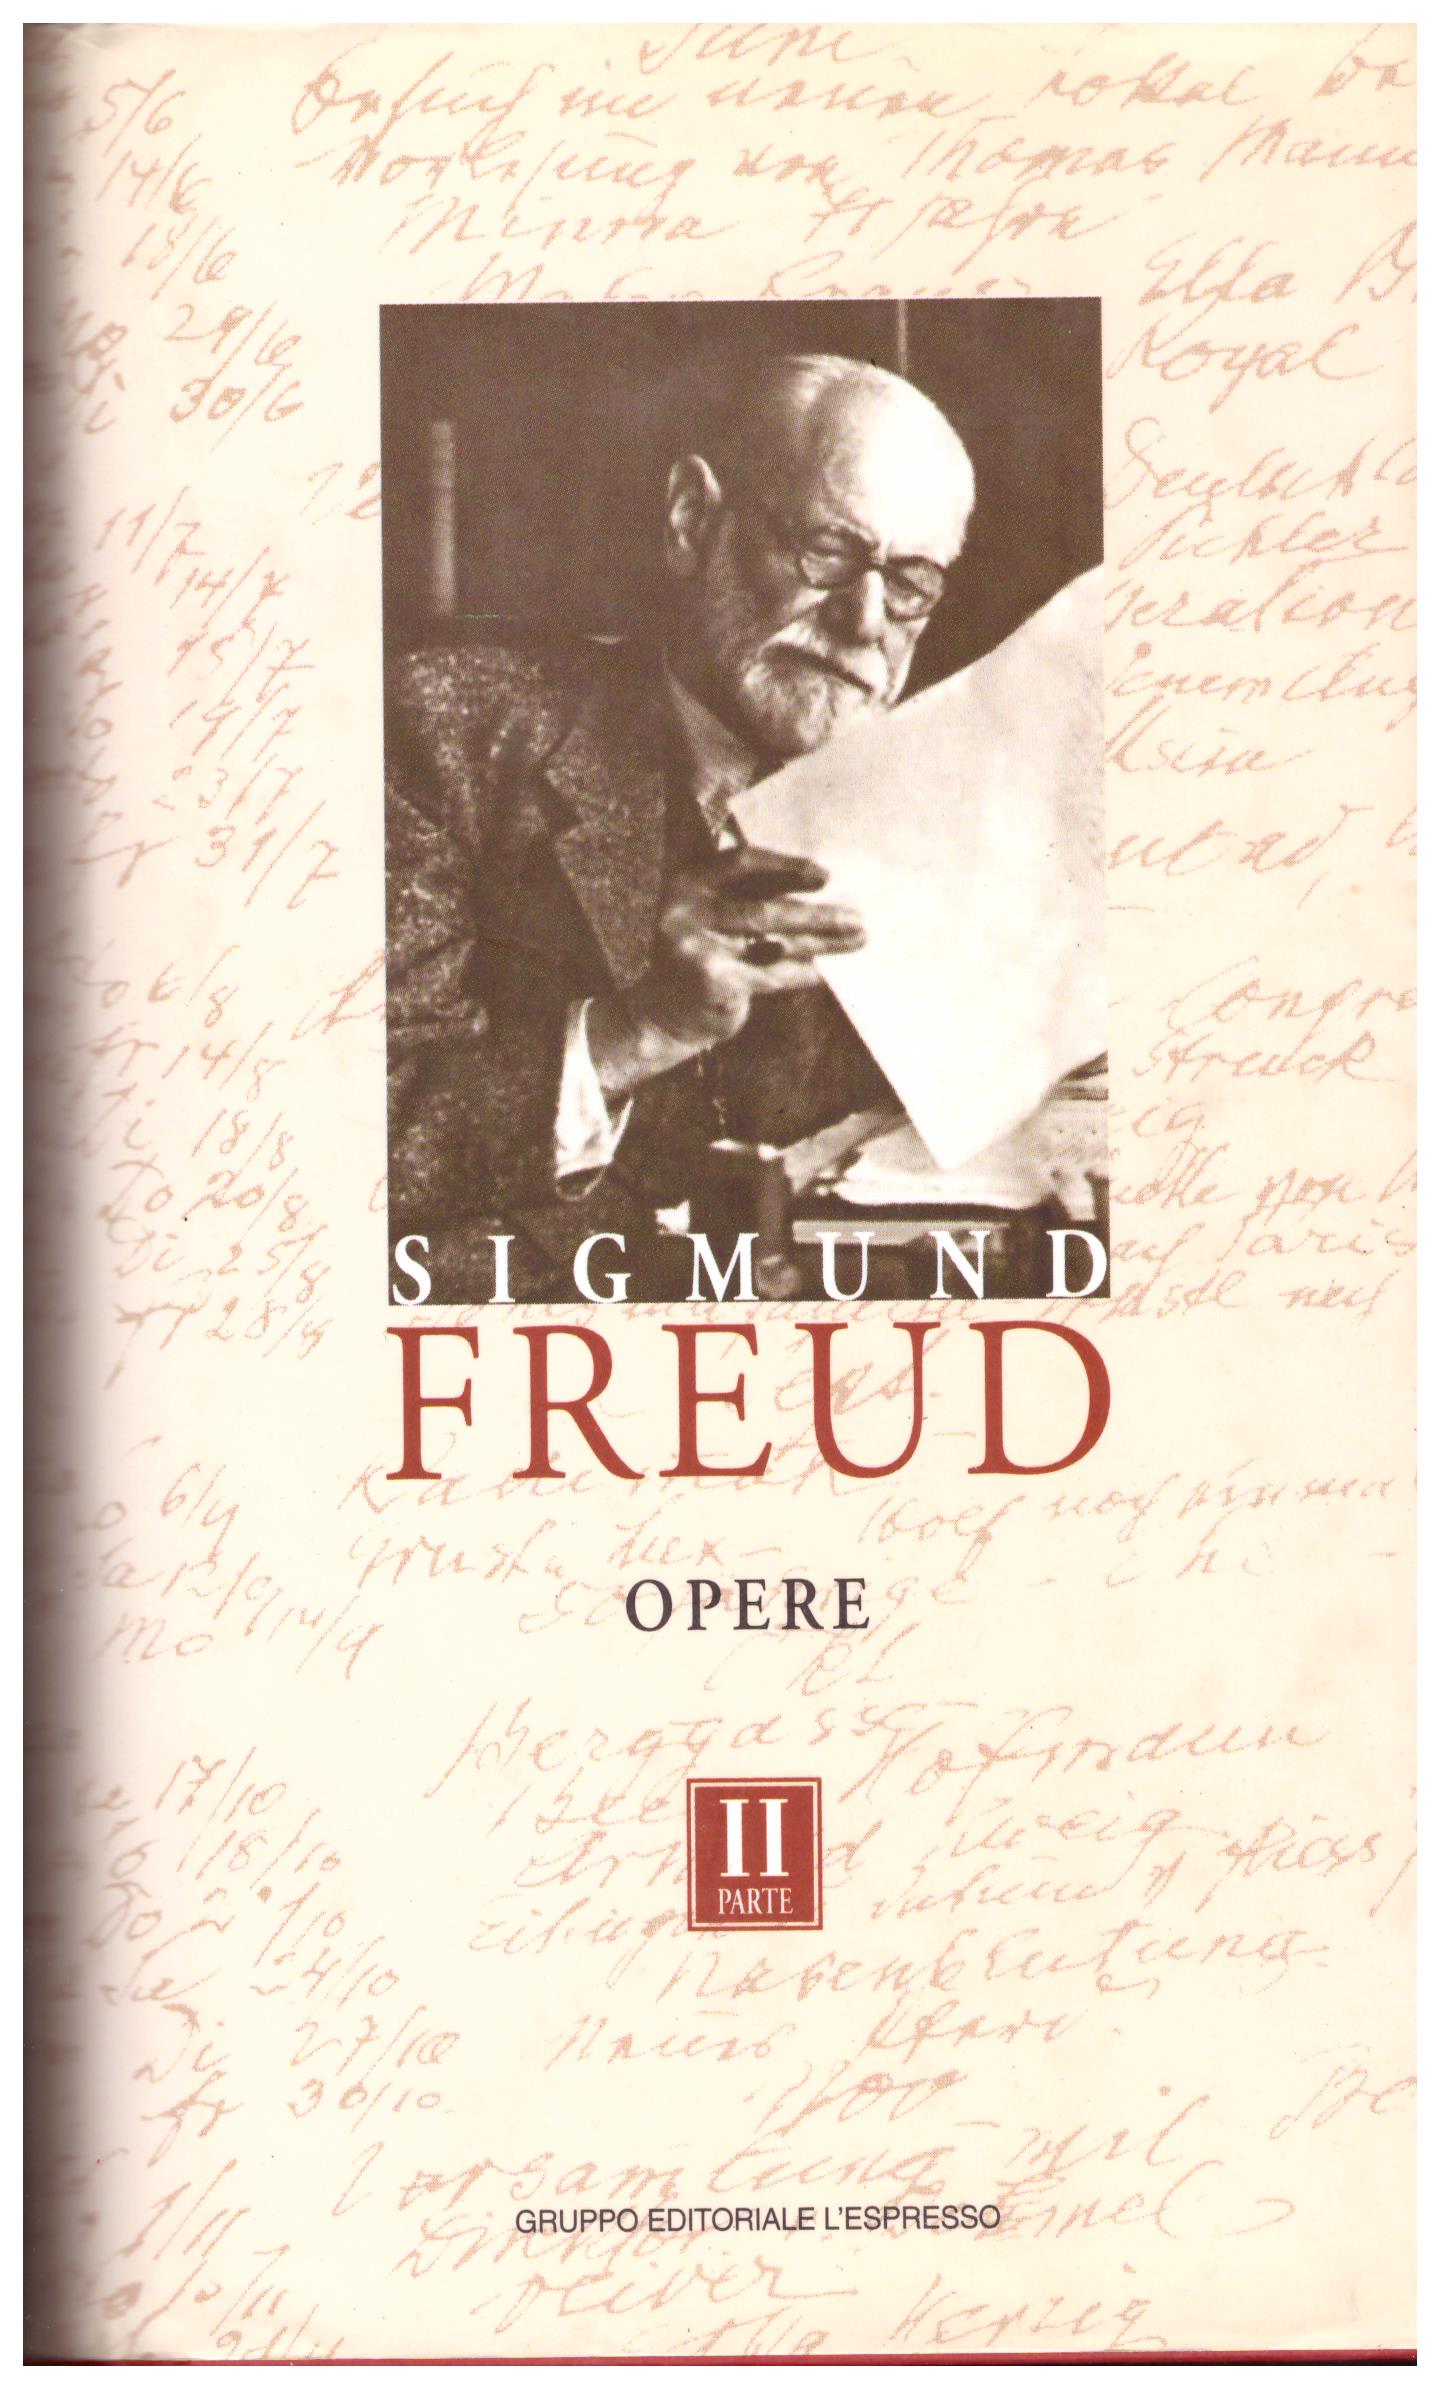 Titolo: Opere parte II (l'interpretazione dei sogni, il sogno, il perturbante)     Autore: Sigmund Freud    Editore: Gruppo editoriale l'espresso